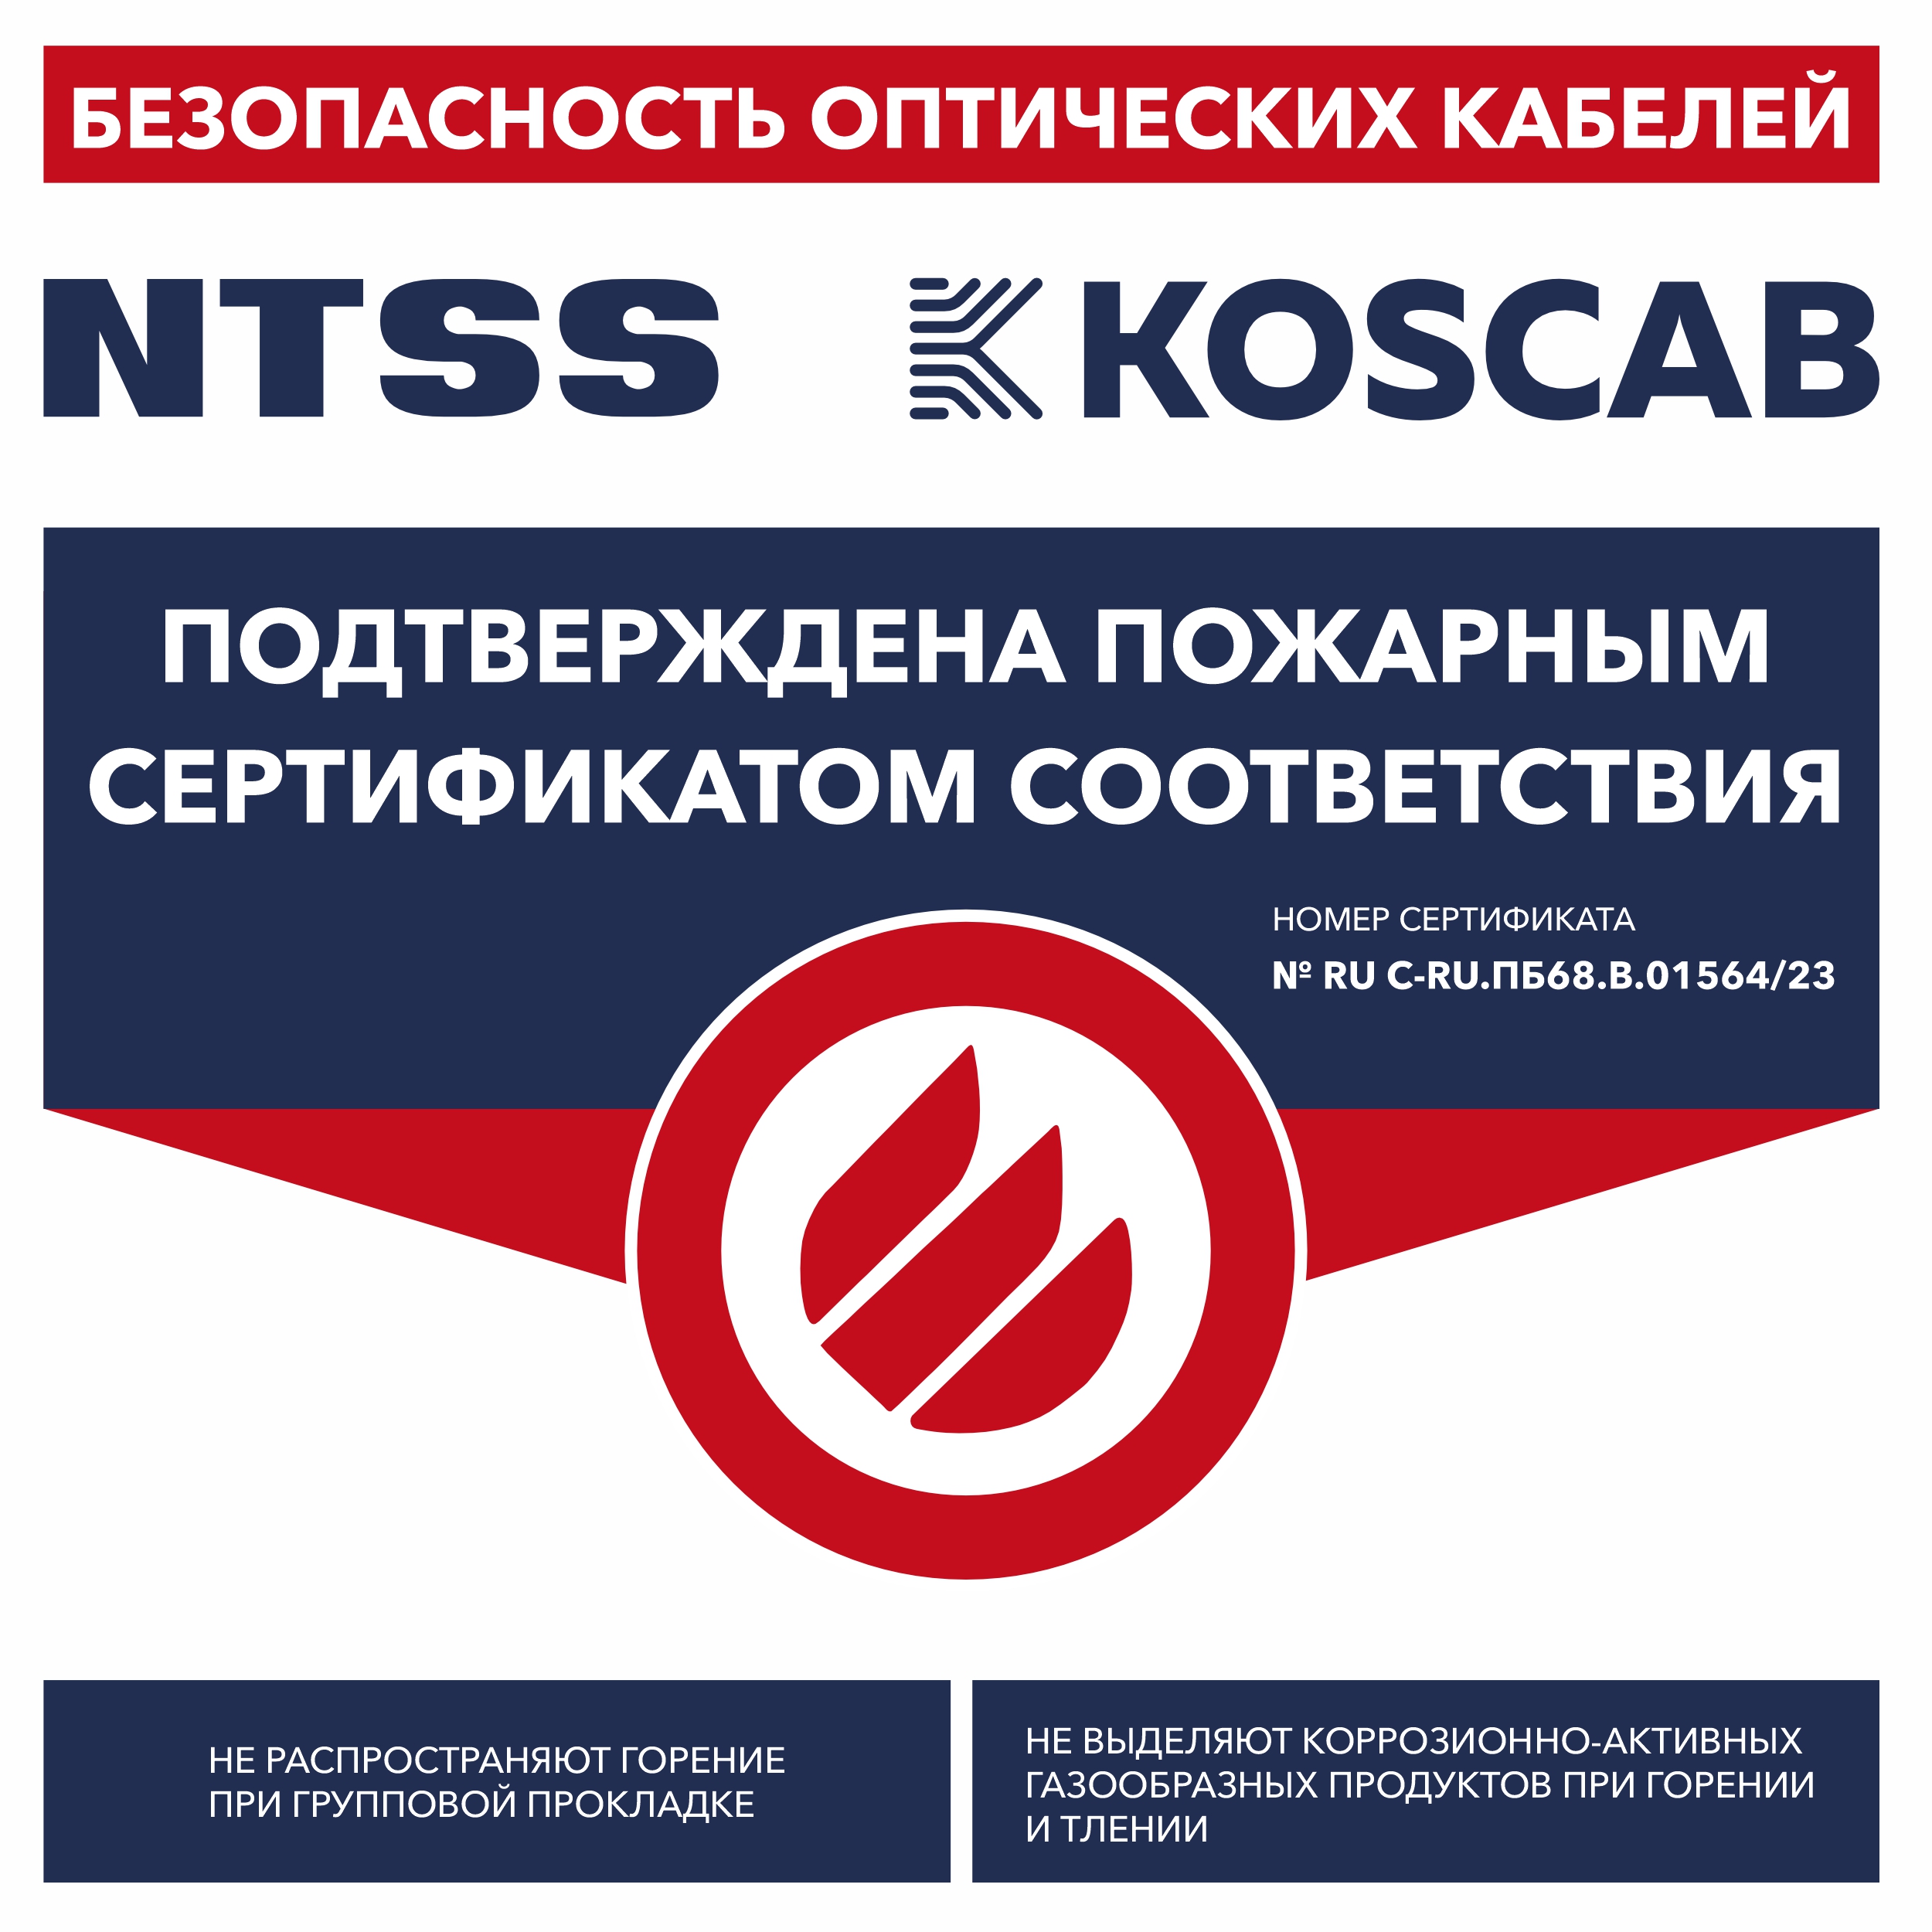 NTSS и KOS получили пожарный сертификат